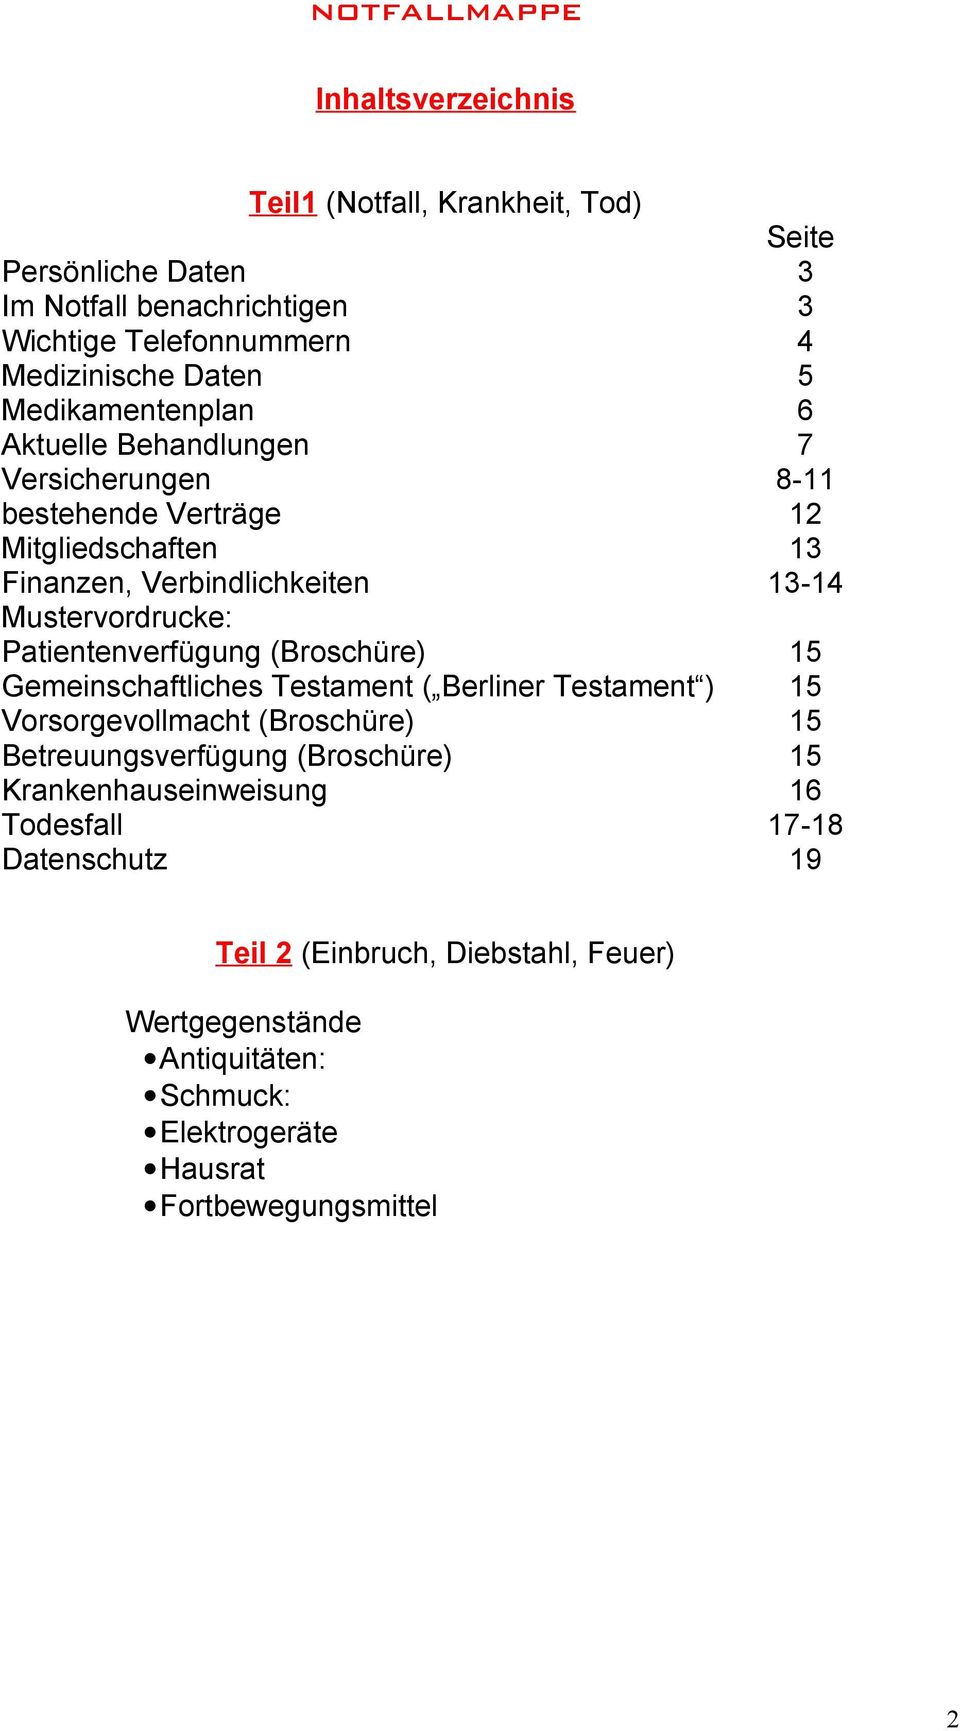 Patientenverfügung (Broschüre) 15 Gemeinschaftliches Testament ( Berliner Testament ) 15 Vorsorgevollmacht (Broschüre) 15 Betreuungsverfügung (Broschüre) 15